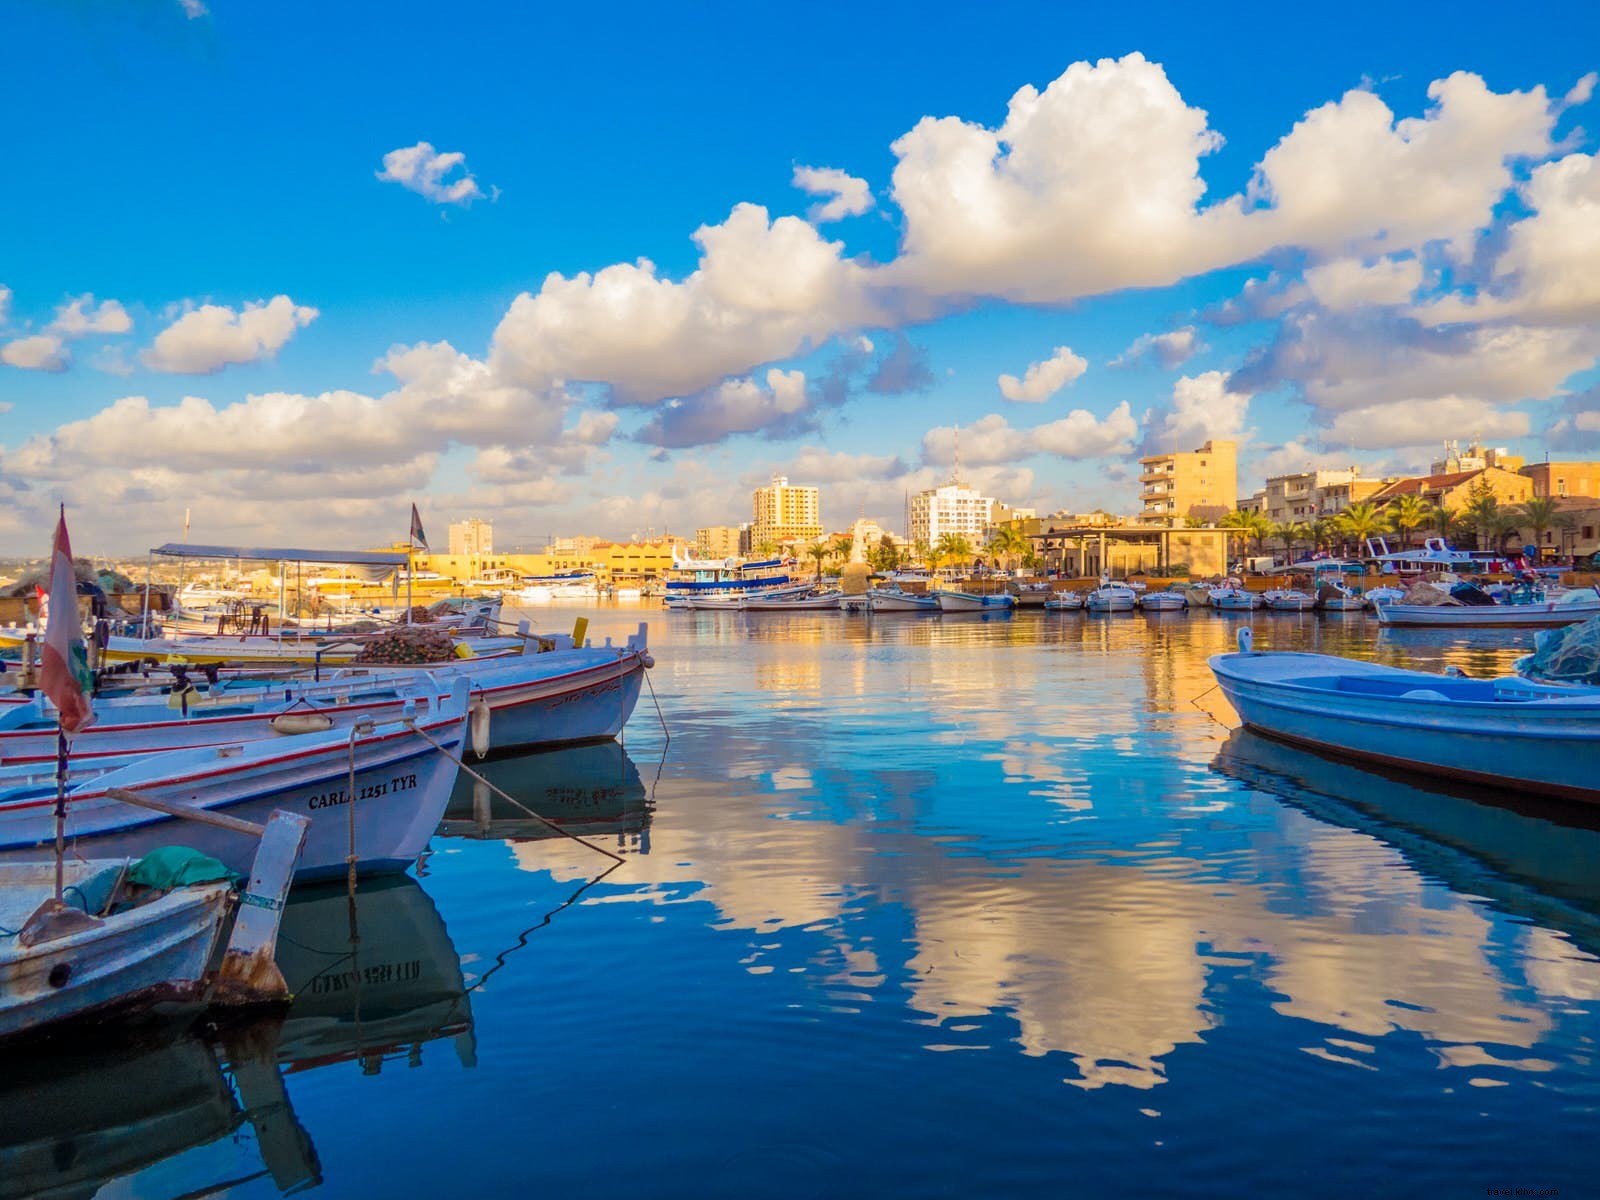 Líbano por primera vez:los mejores consejos para ayudarlo a planificar su primer viaje 